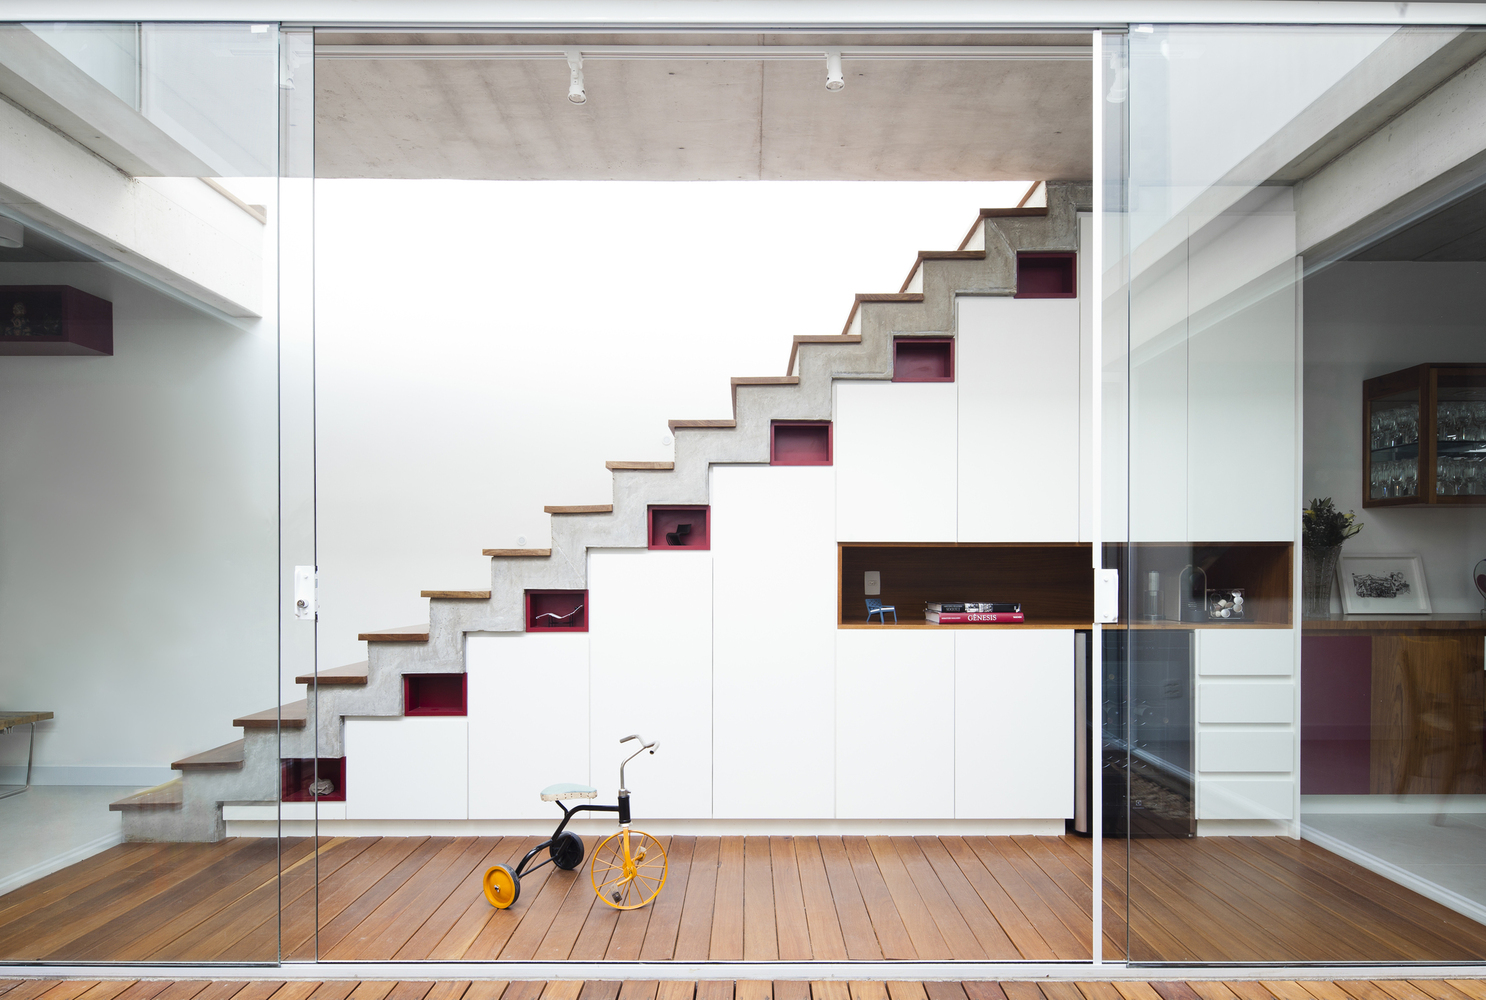 Escadas multifuncionais: 9 opções para aproveitar o espaço vertical